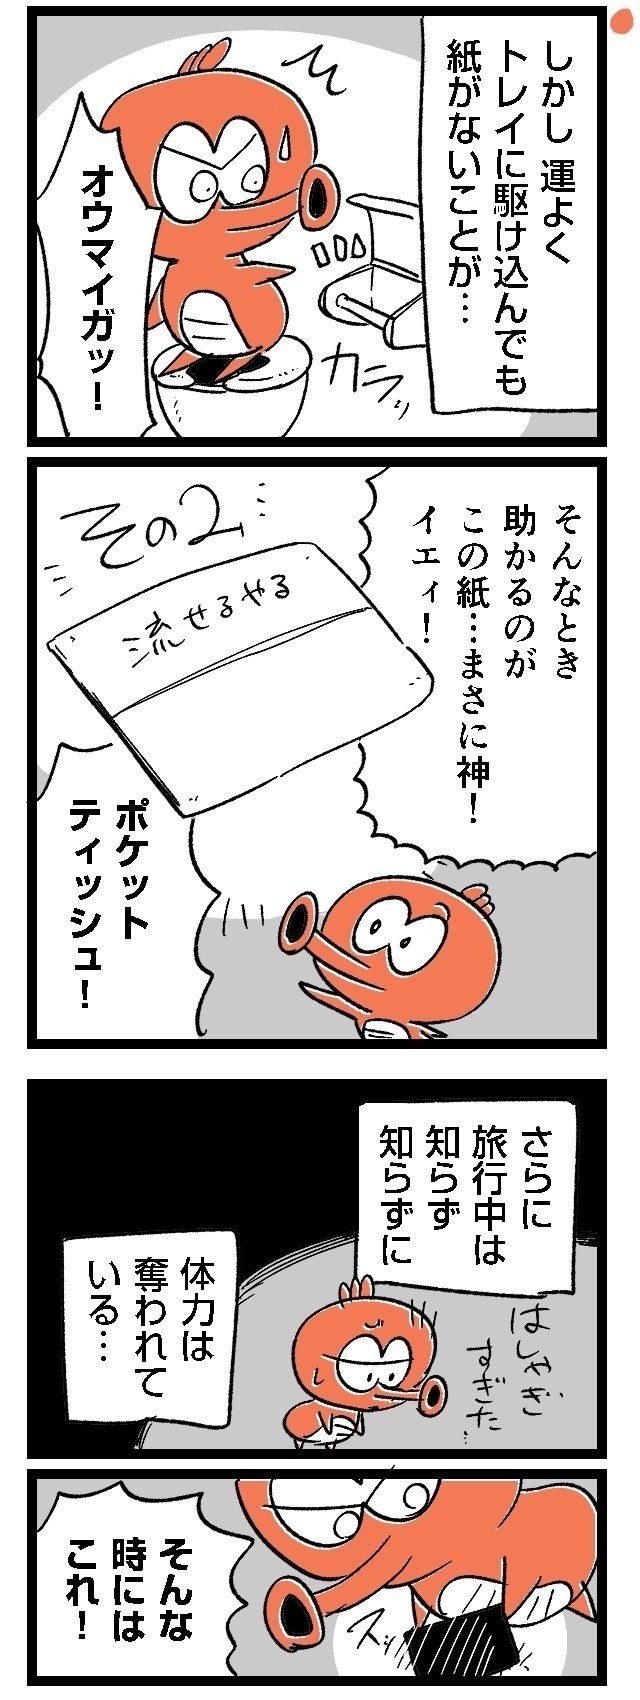 03ルポ漫画旅行_005